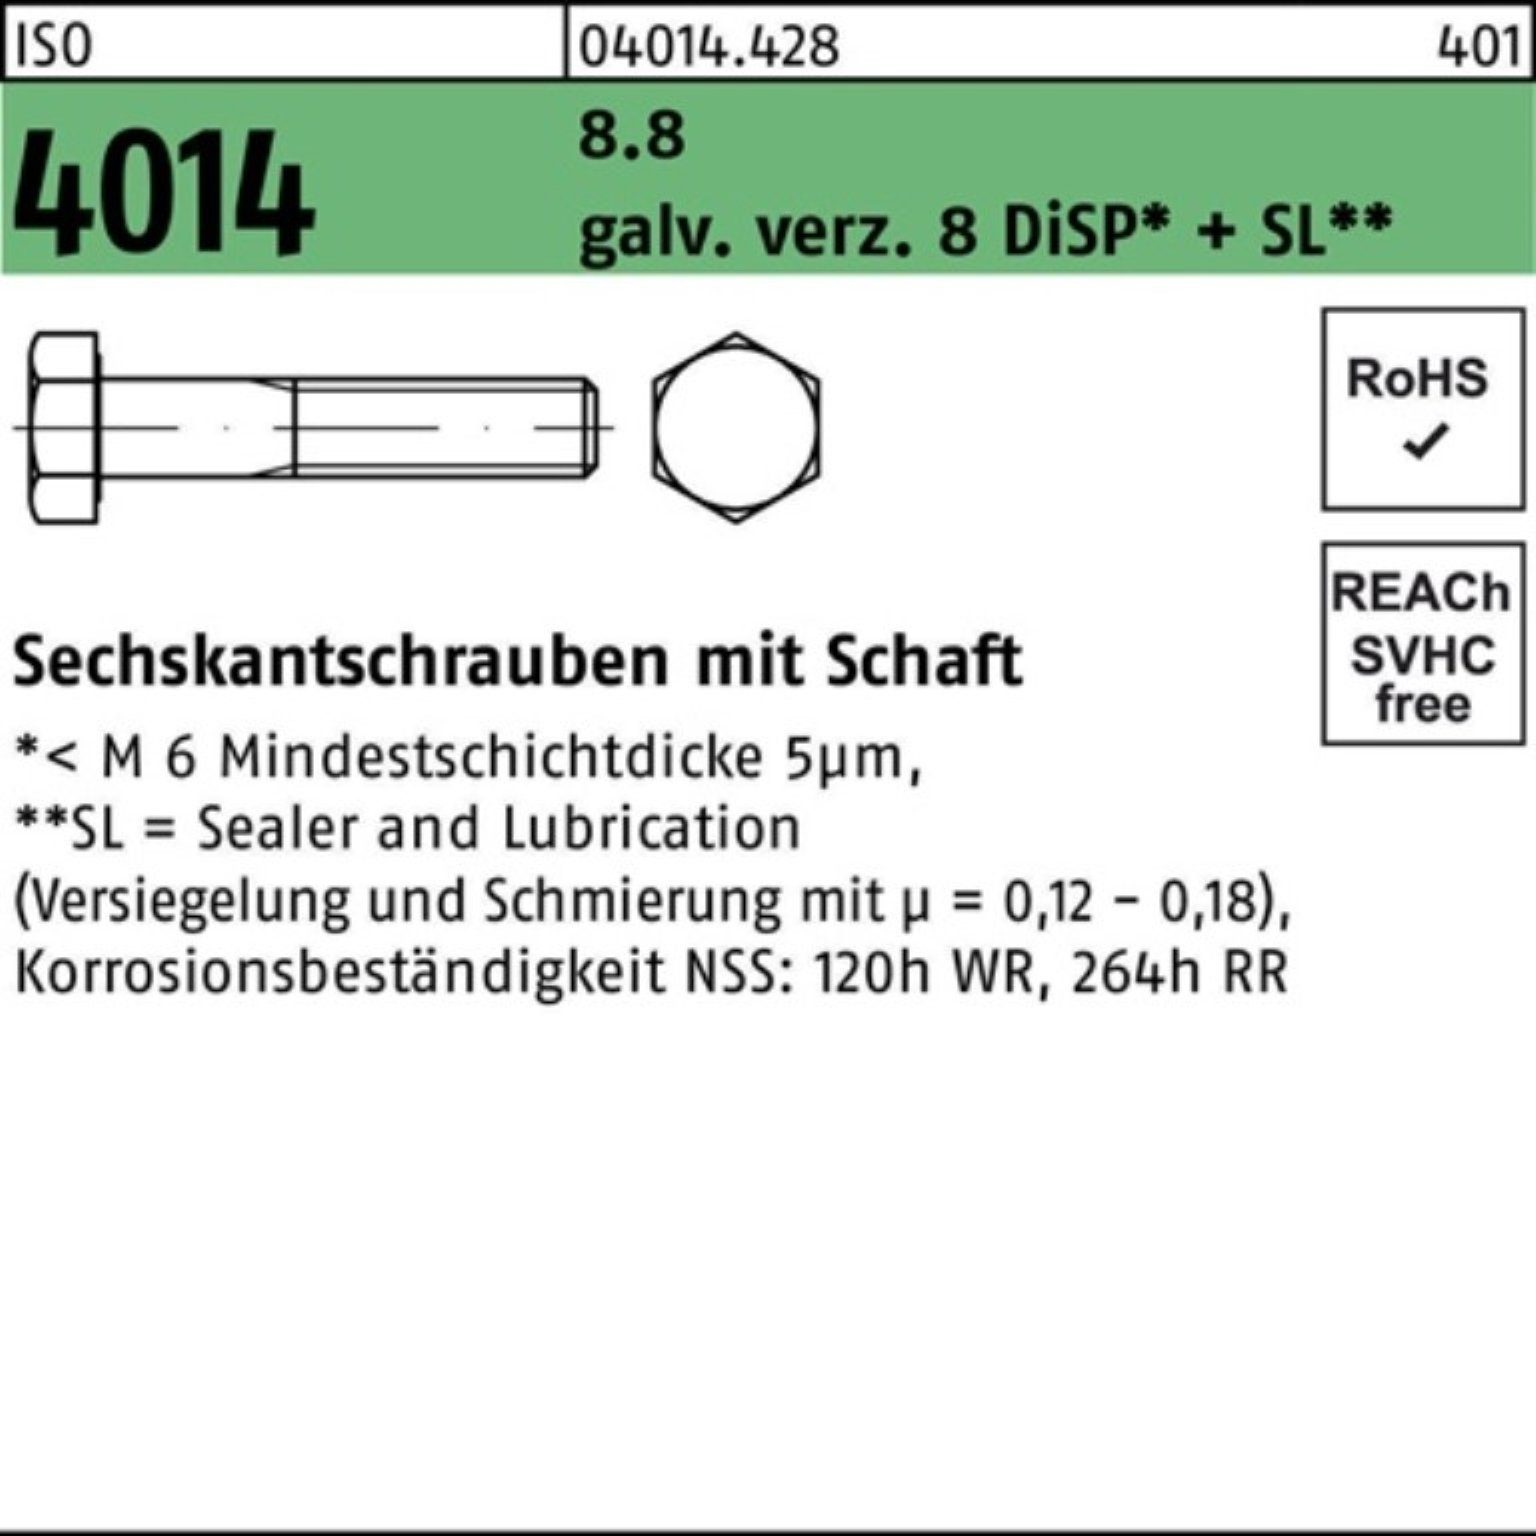 Bufab Sechskantschraube 100er Pack 8 4014 8.8 D ISO galv.verz. Sechskantschraube M6x220 Schaft